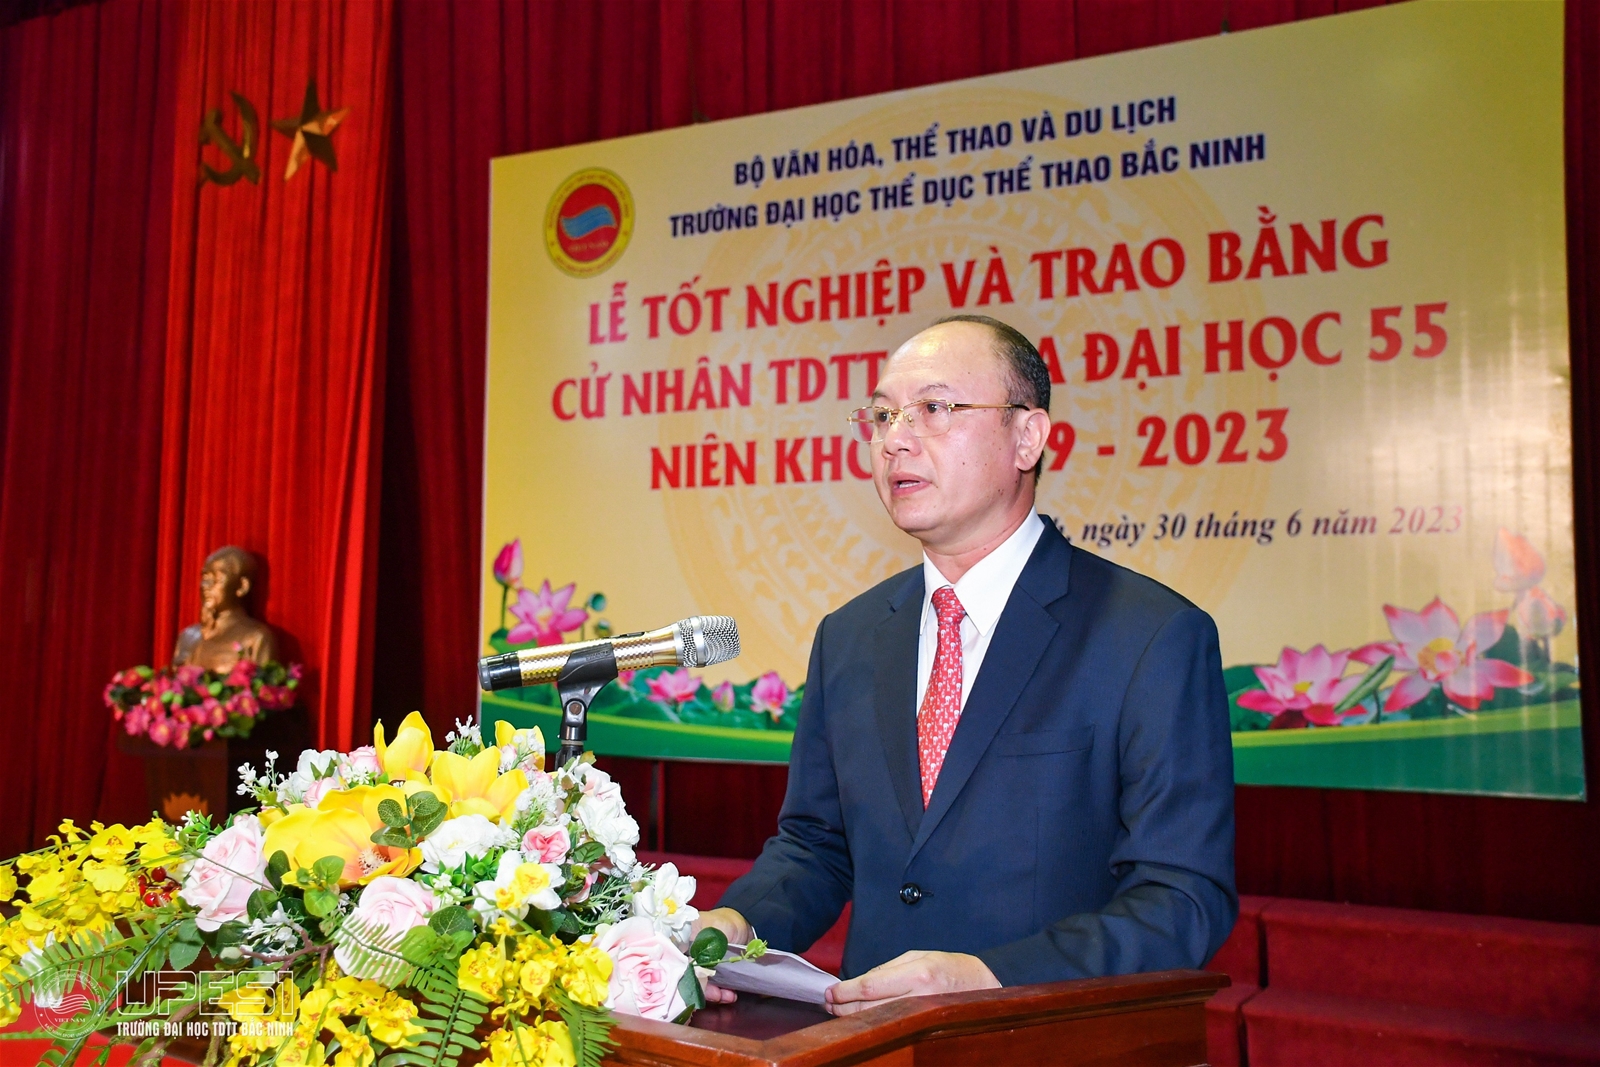 Trường Đại học TDTT Bắc Ninh - Lễ tốt nghiệp và trao bằng cử nhân TDTT năm 2023 - Ảnh 1.